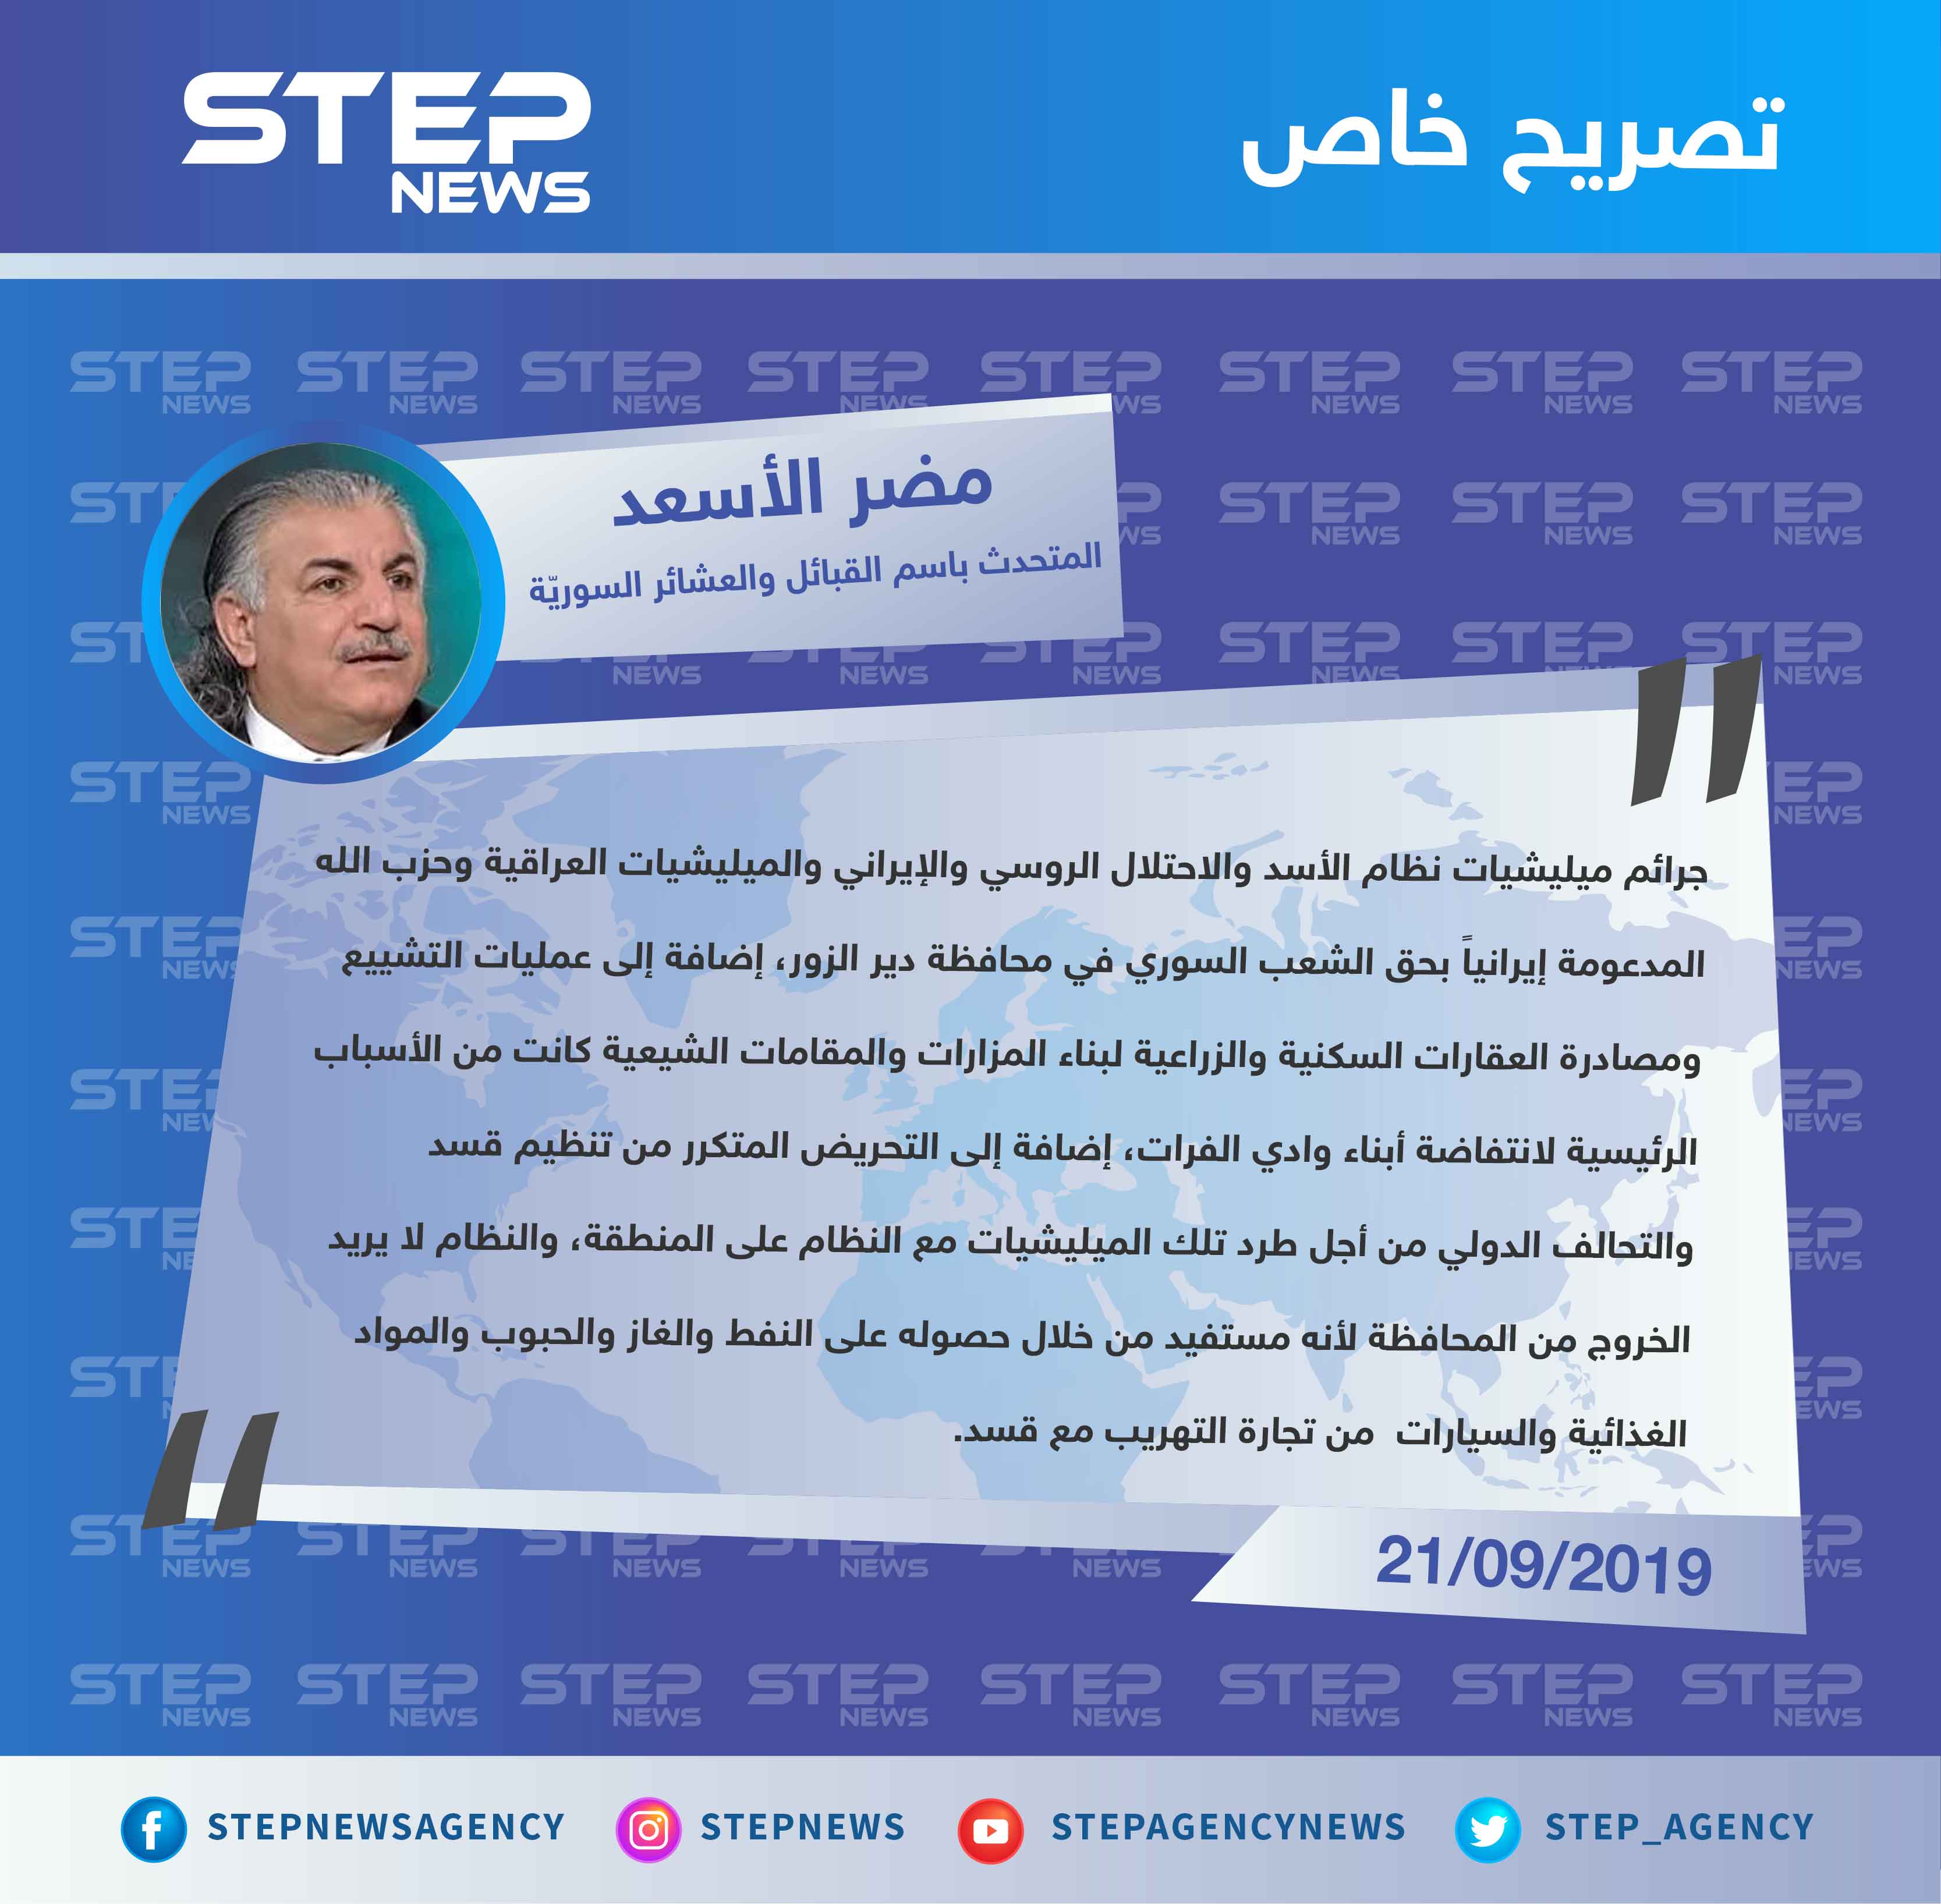 المتحدث الرسمي باسم مجلس القبائل والعشائر السورية يوضح ل"ستيب" الأسباب الحقيقية لمظاهرات ديرالزور